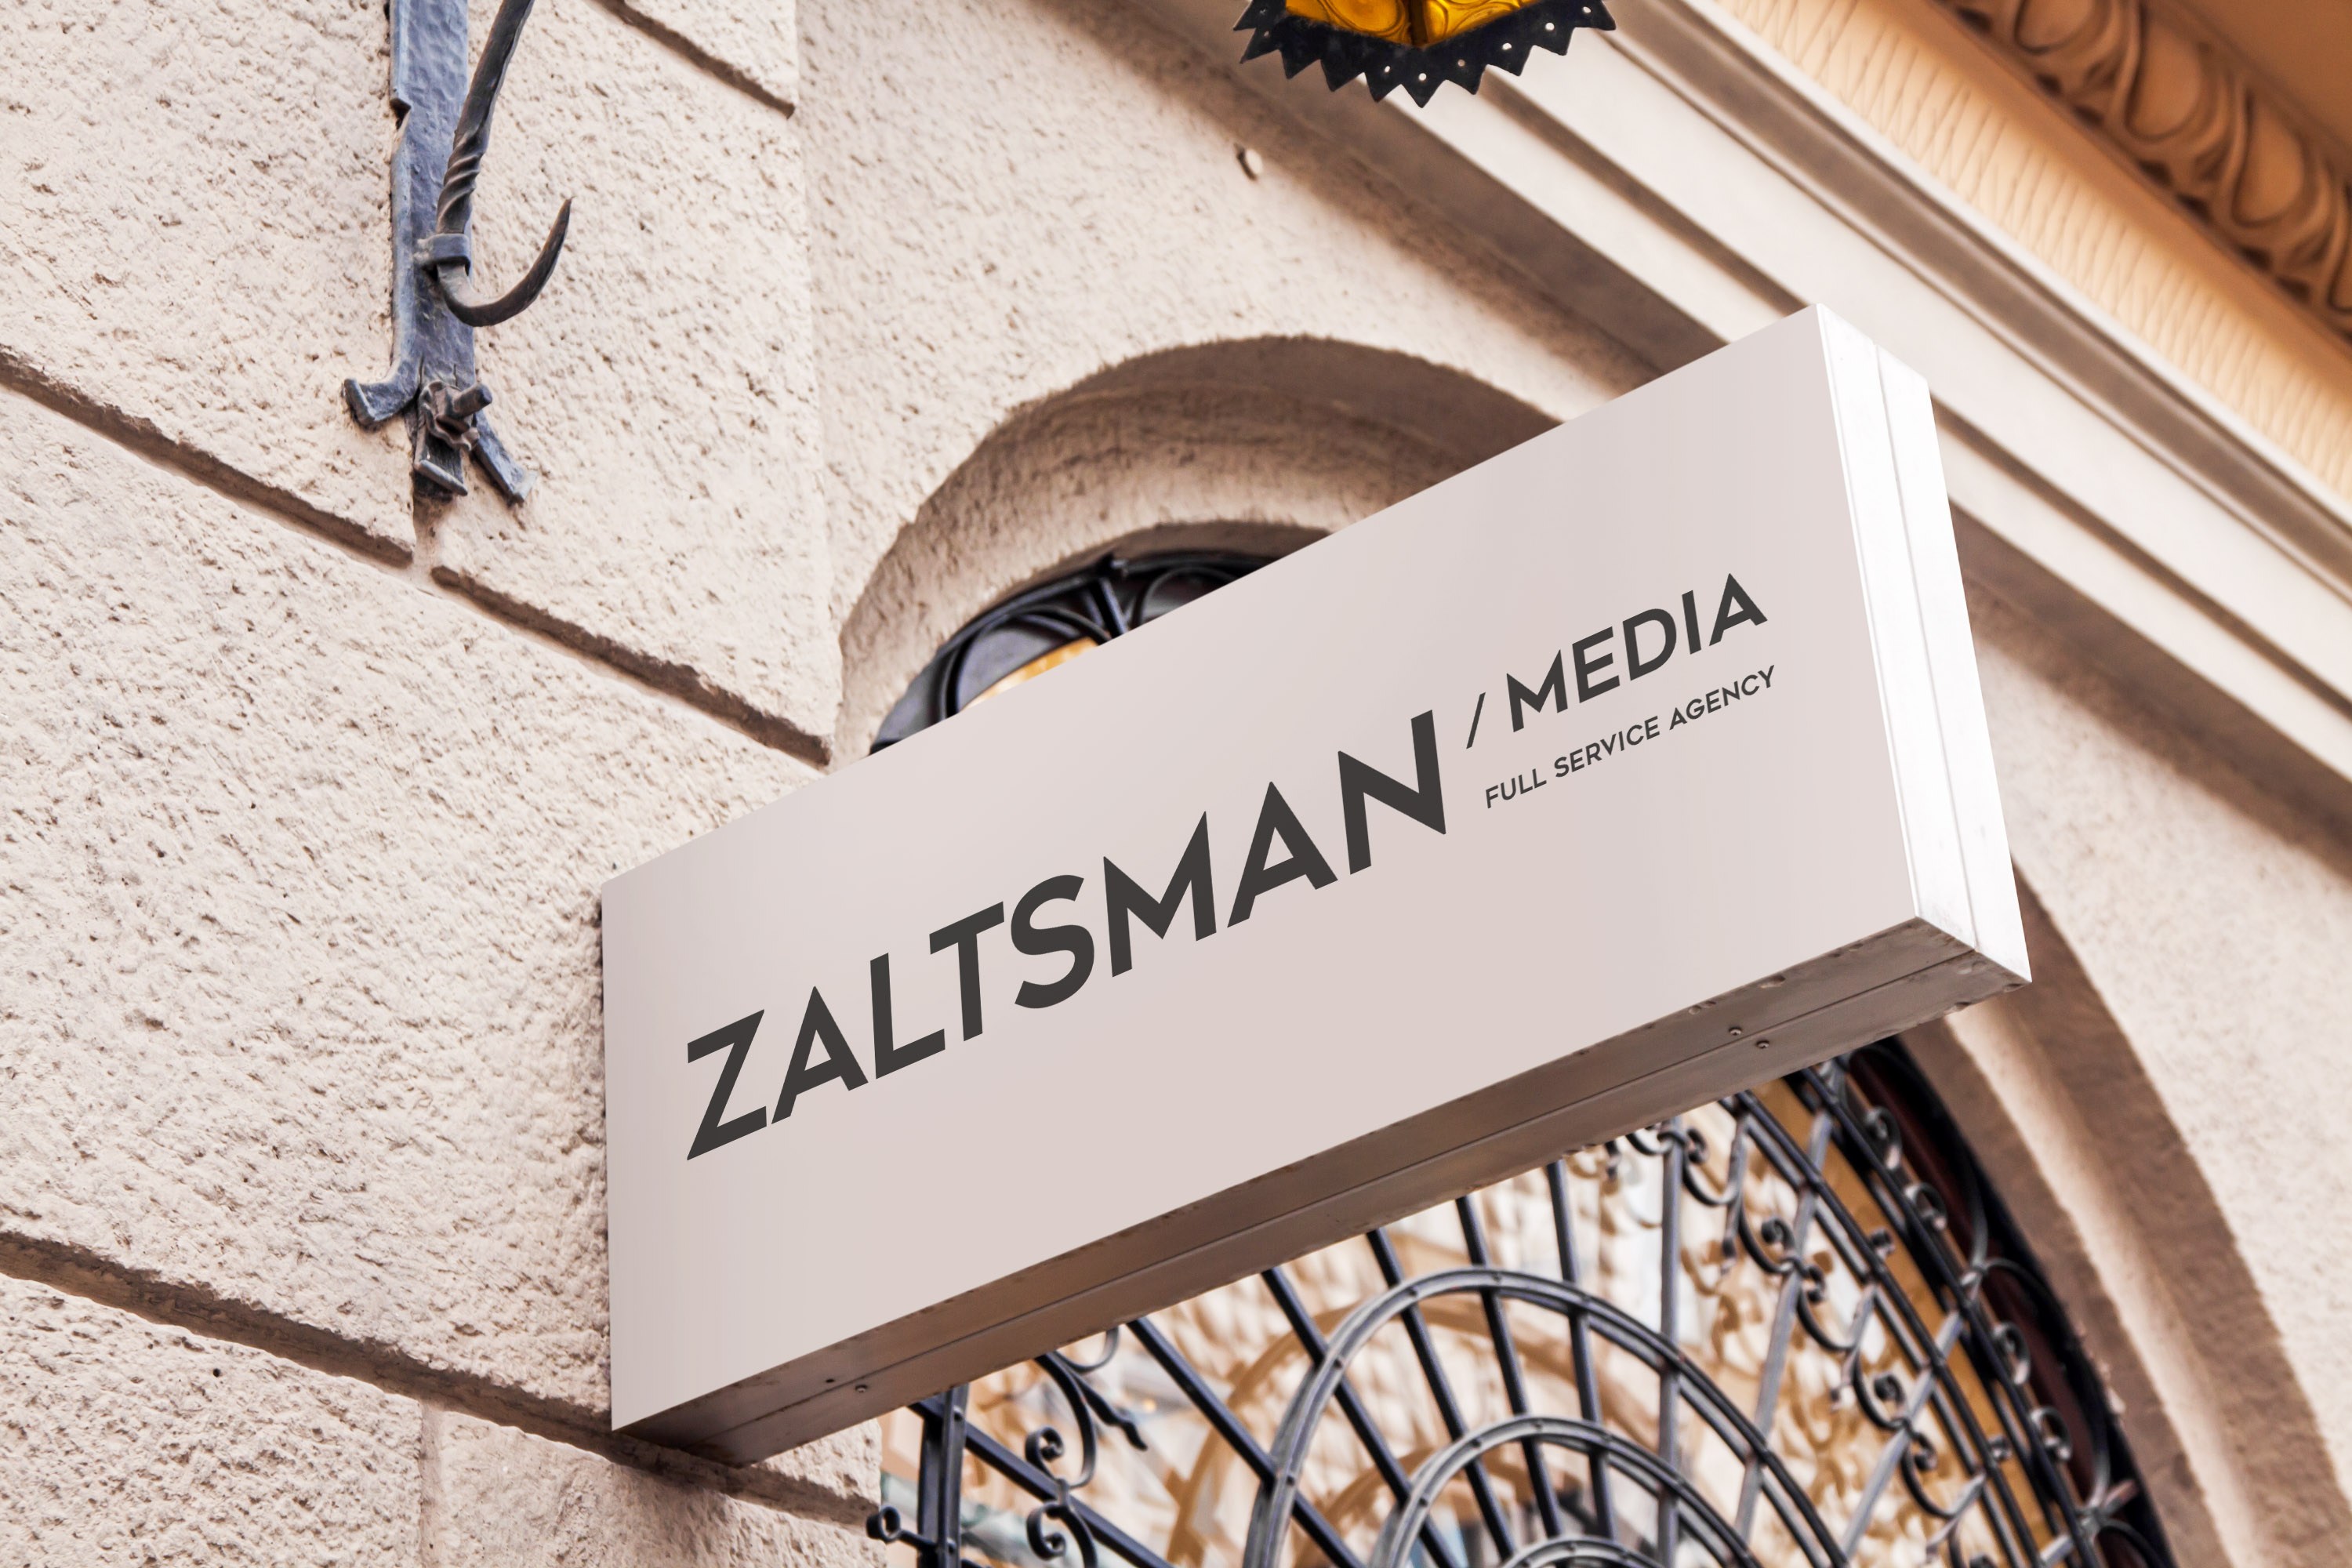 Rebranding Zaltsman Media